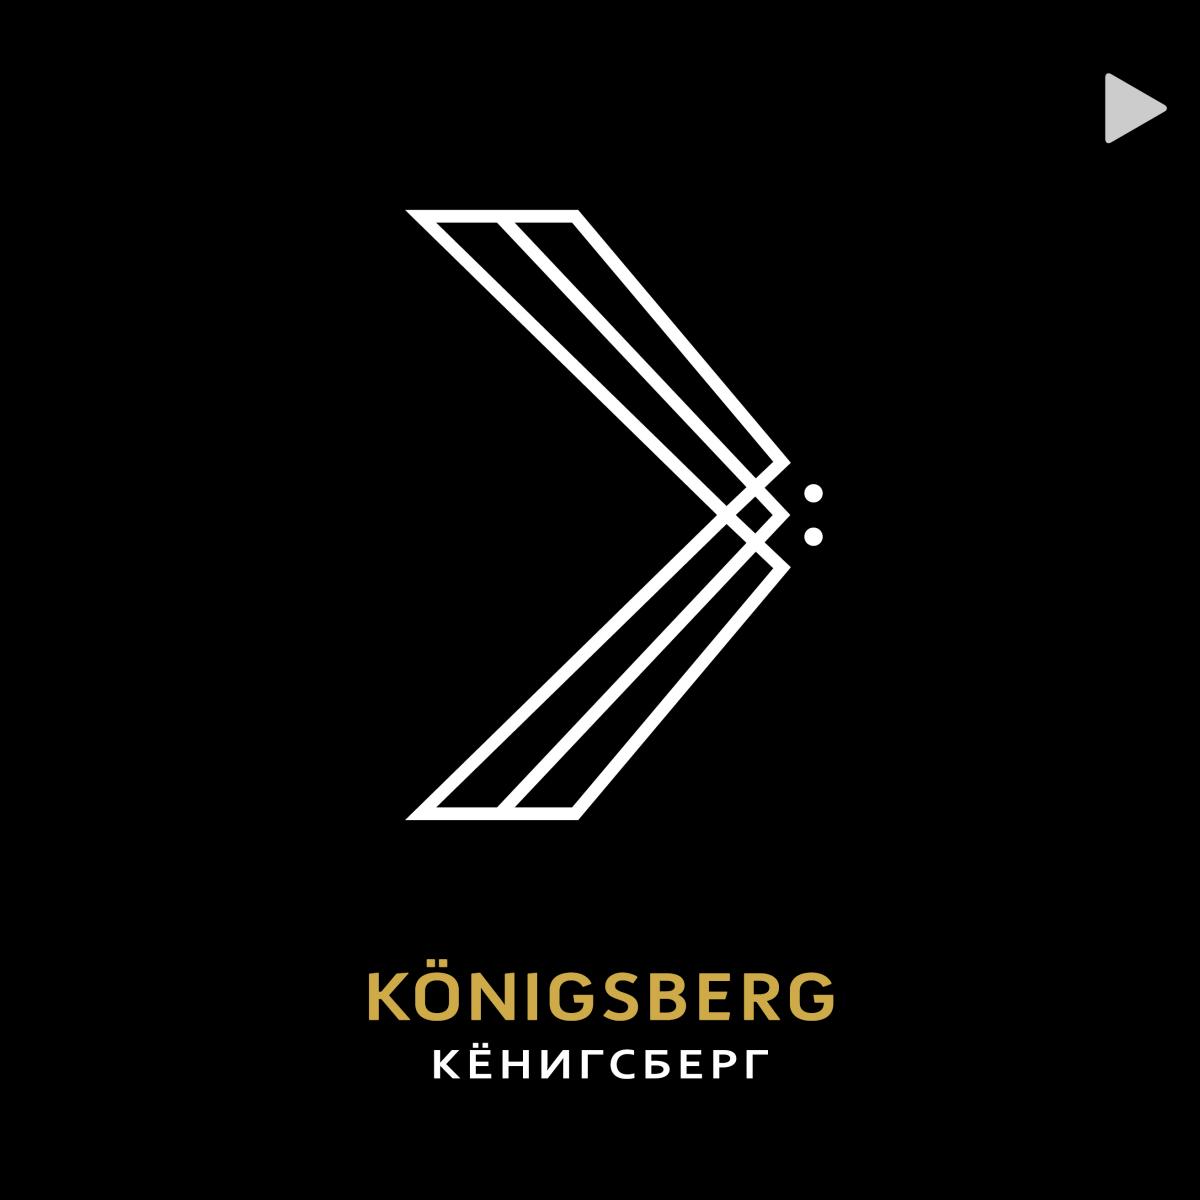 Königsberg animation   →